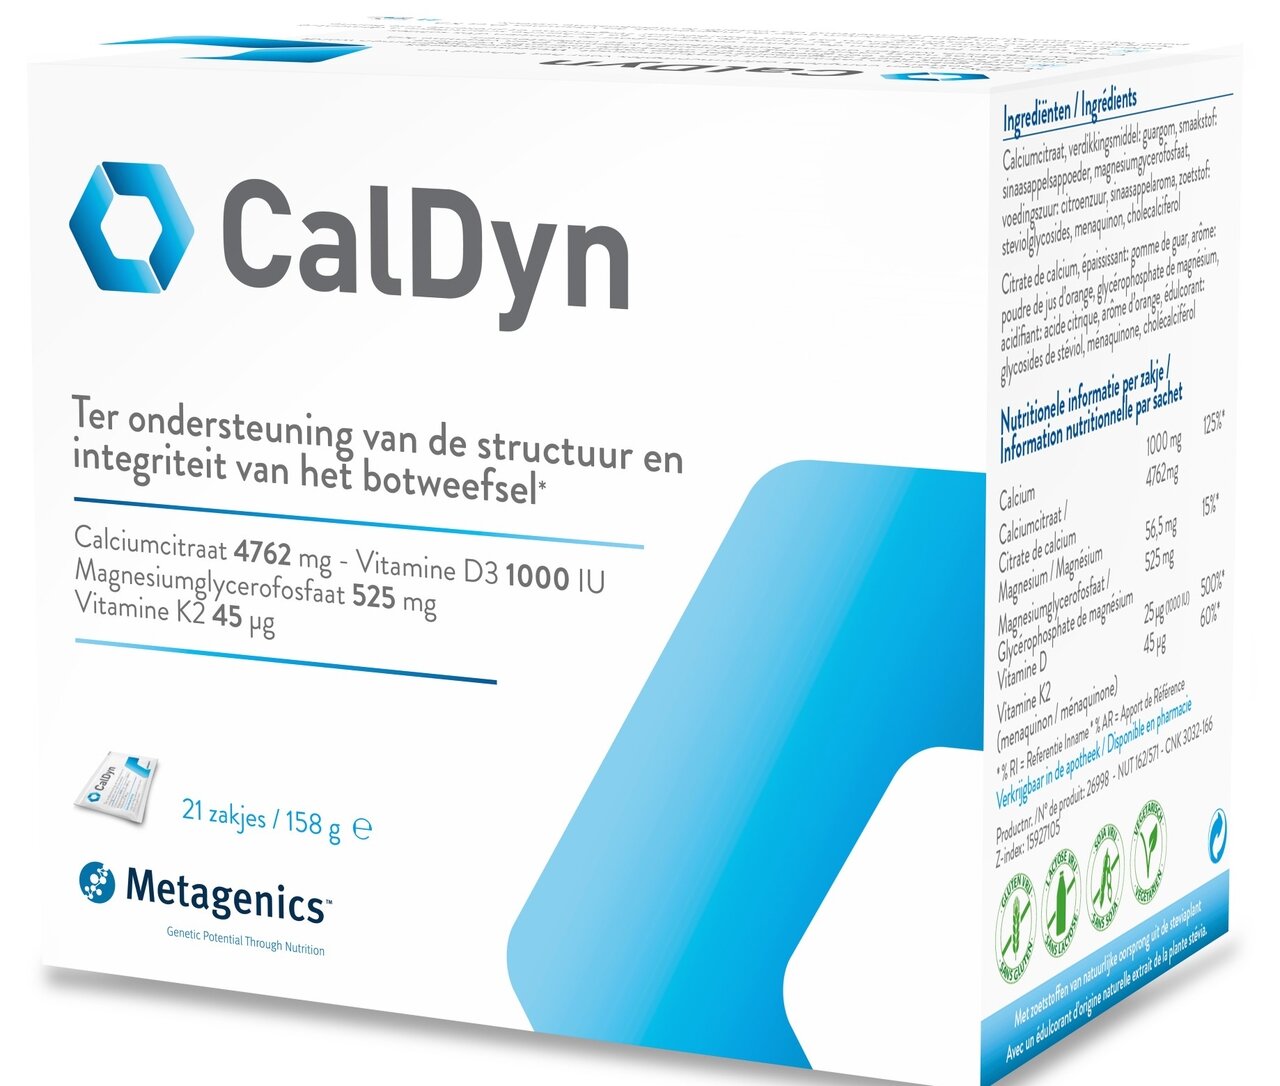 Metagenics Caldyn 21 zakjes